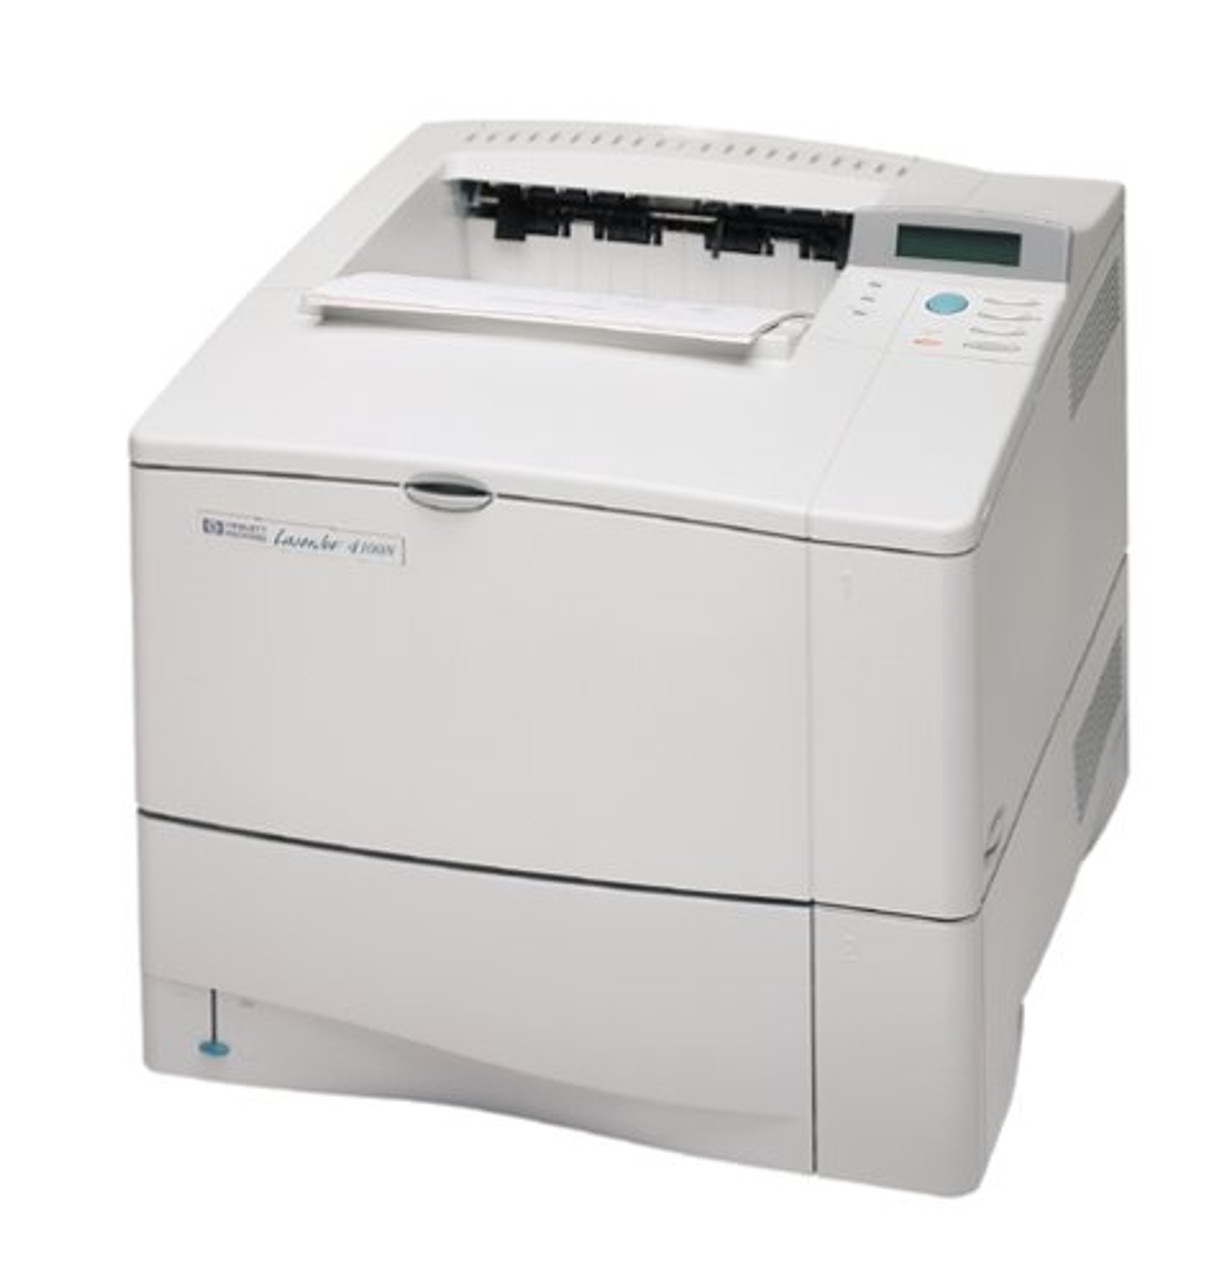 hp laserjet 4100 series printer